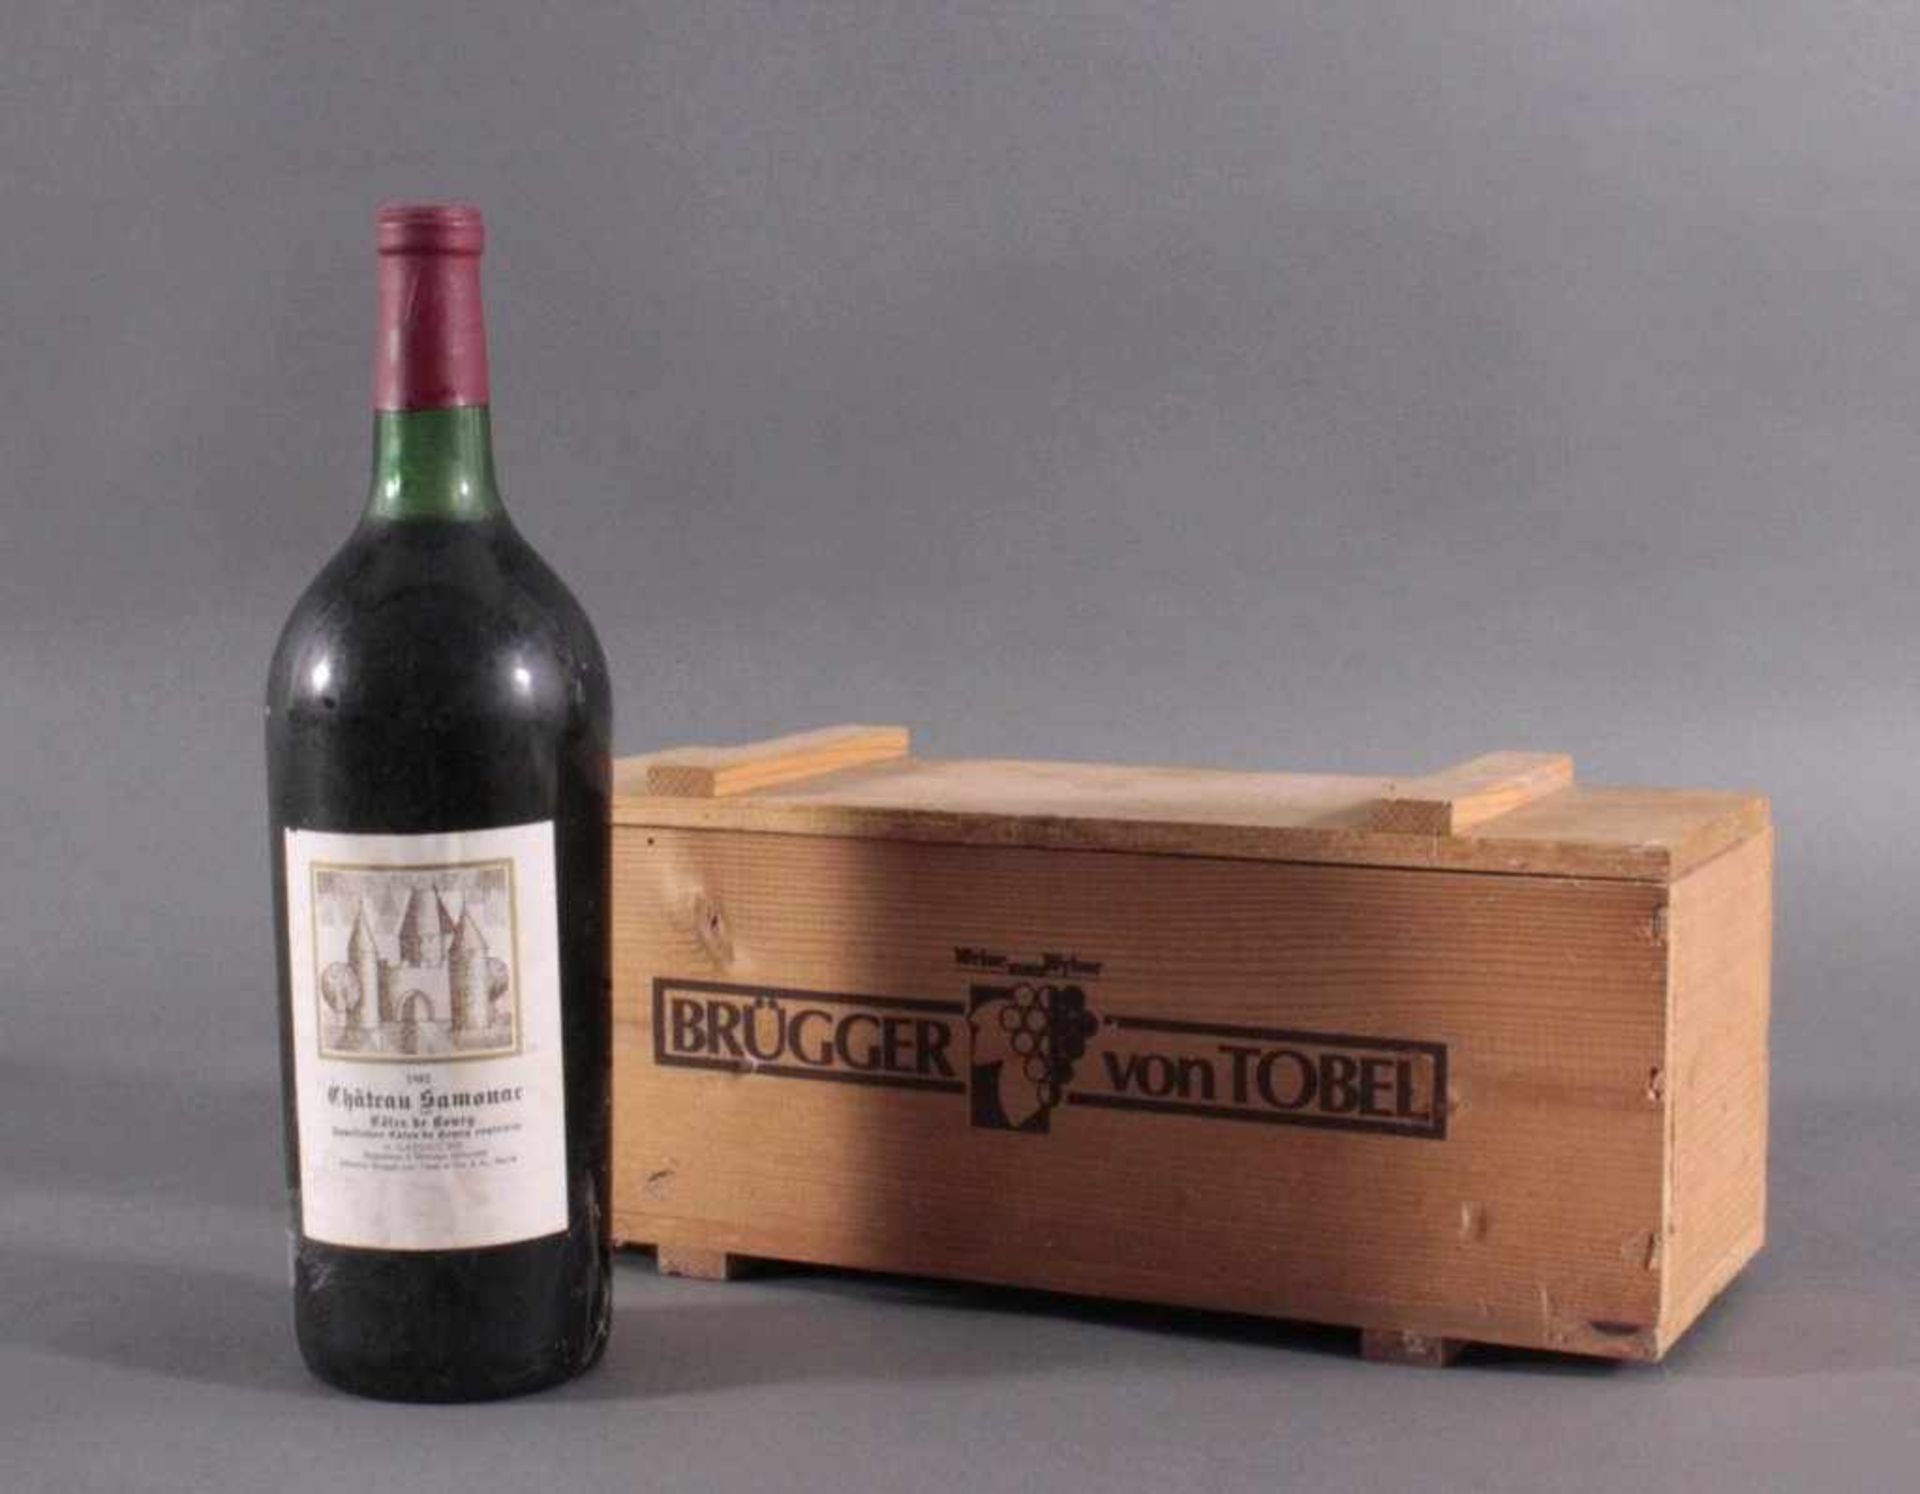 1982er Chateau Samonac, Cotes de Bourg1,5 Liter Flasche, französischer RotweinRetour 13.06.18 - Bild 2 aus 2